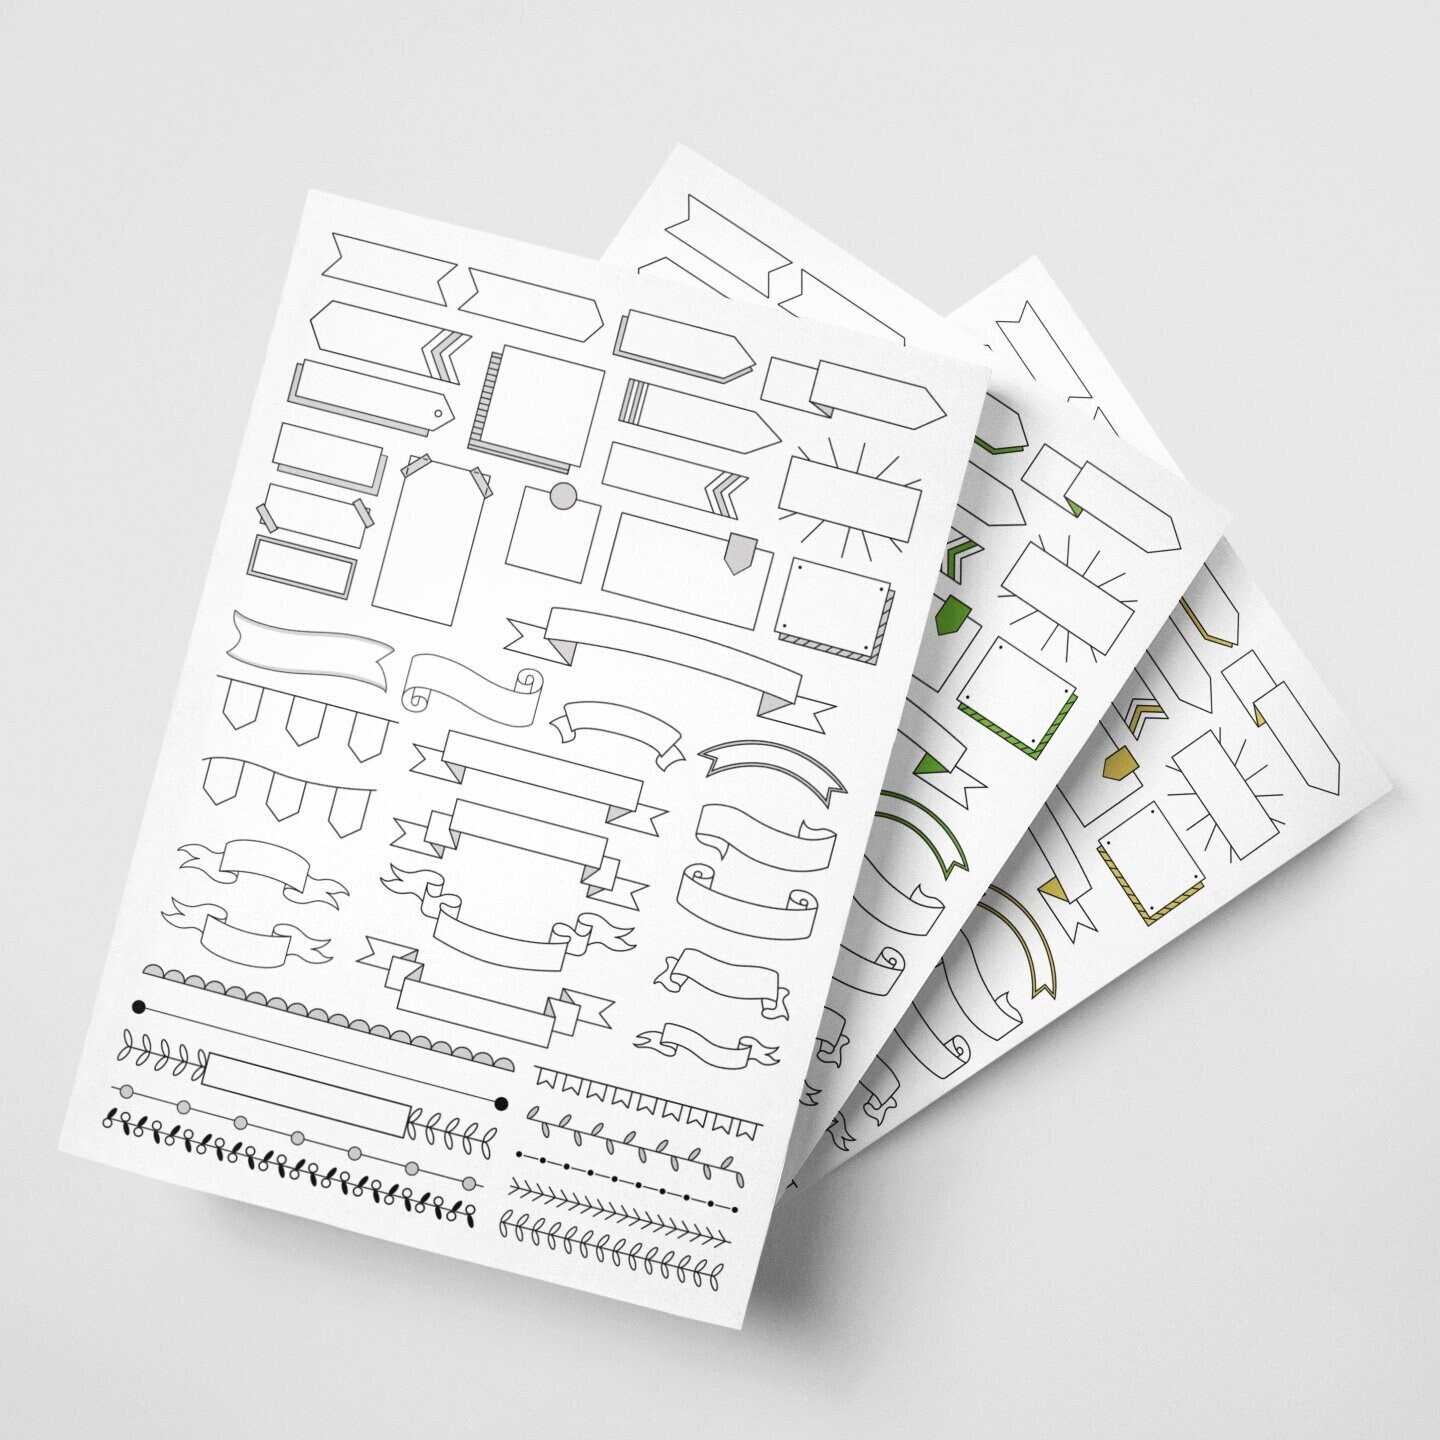 Nuevas pegatinas imprimibles para la agenda #stickers #pegatinas #planner  #printable #imprimible